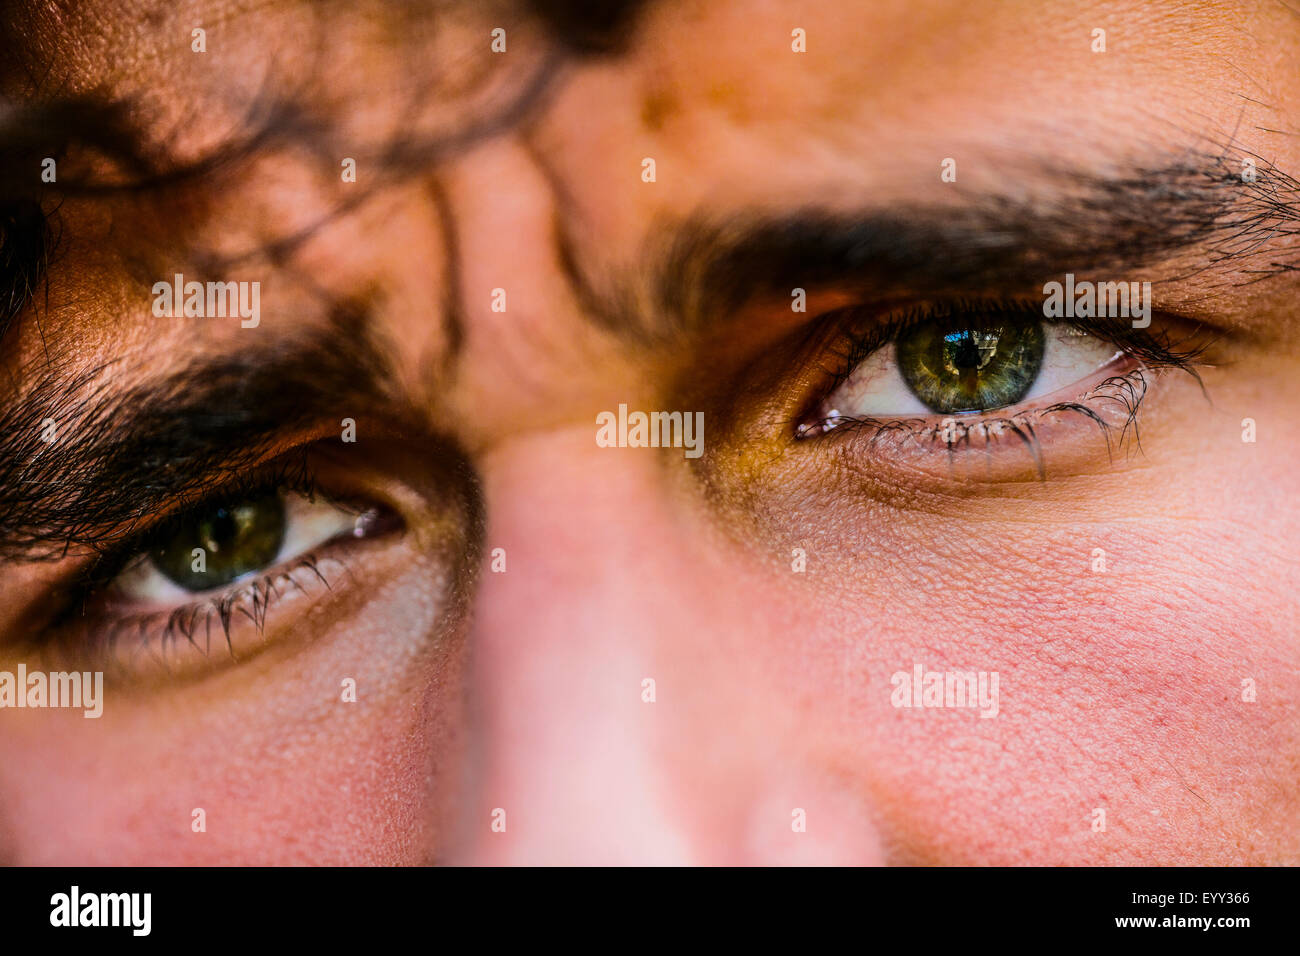 Close up of eyes of Hispanic man Stock Photo